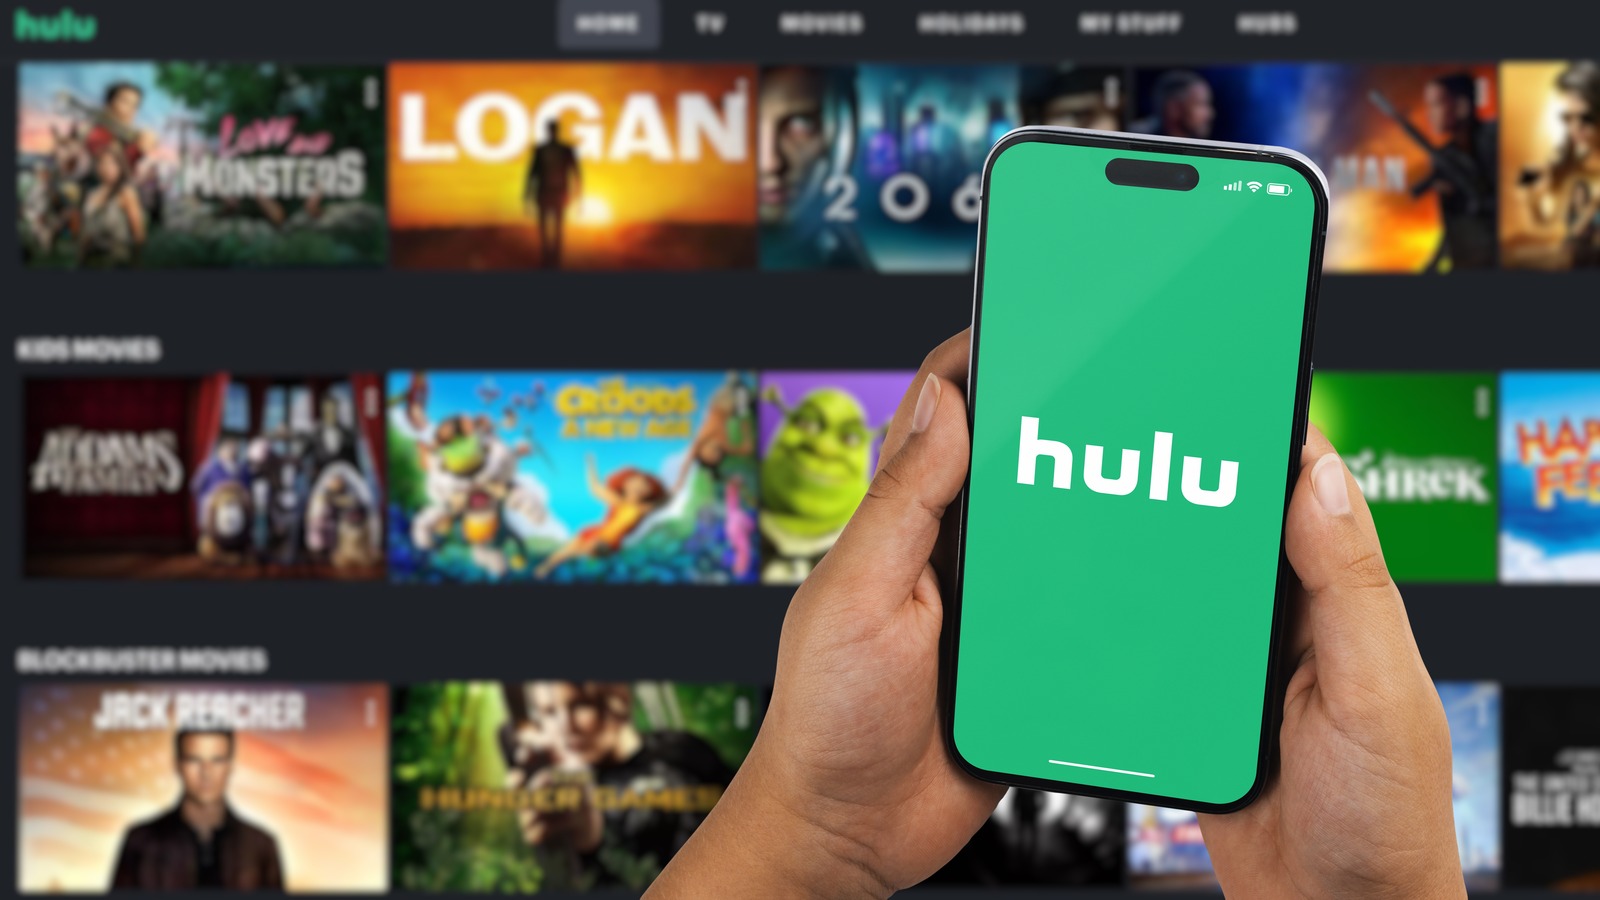 Aquí se explica cómo obtener Hulu gratis con T-Mobile